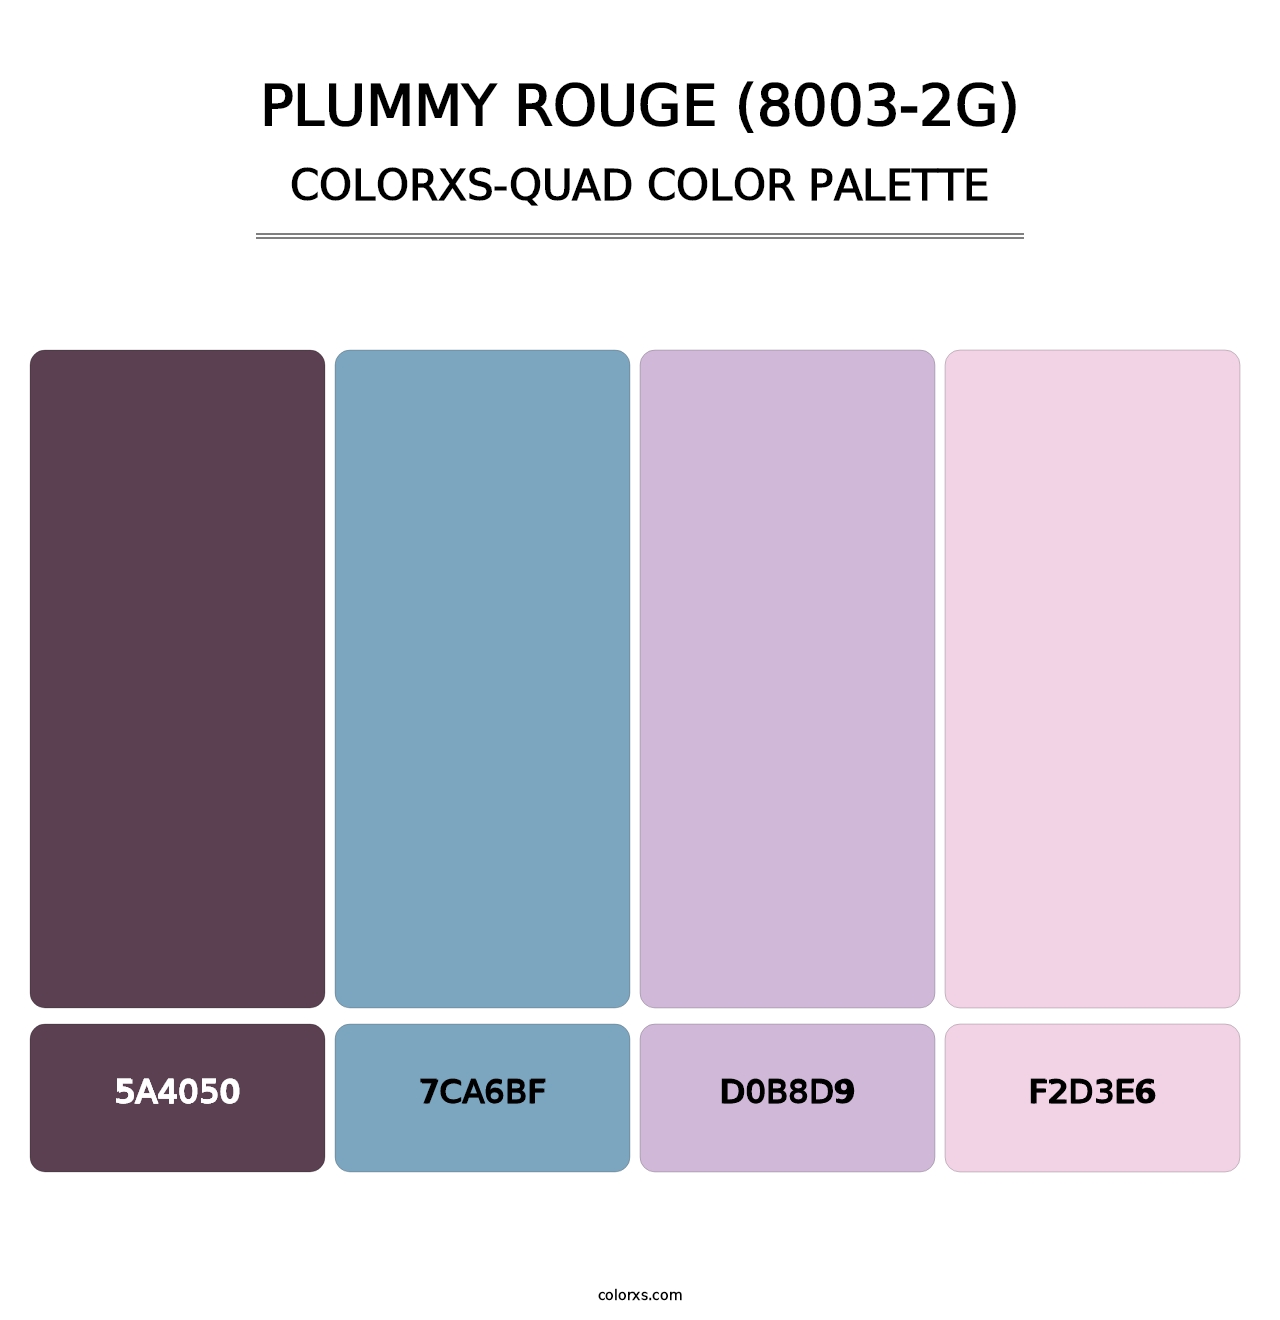 Plummy Rouge (8003-2G) - Colorxs Quad Palette